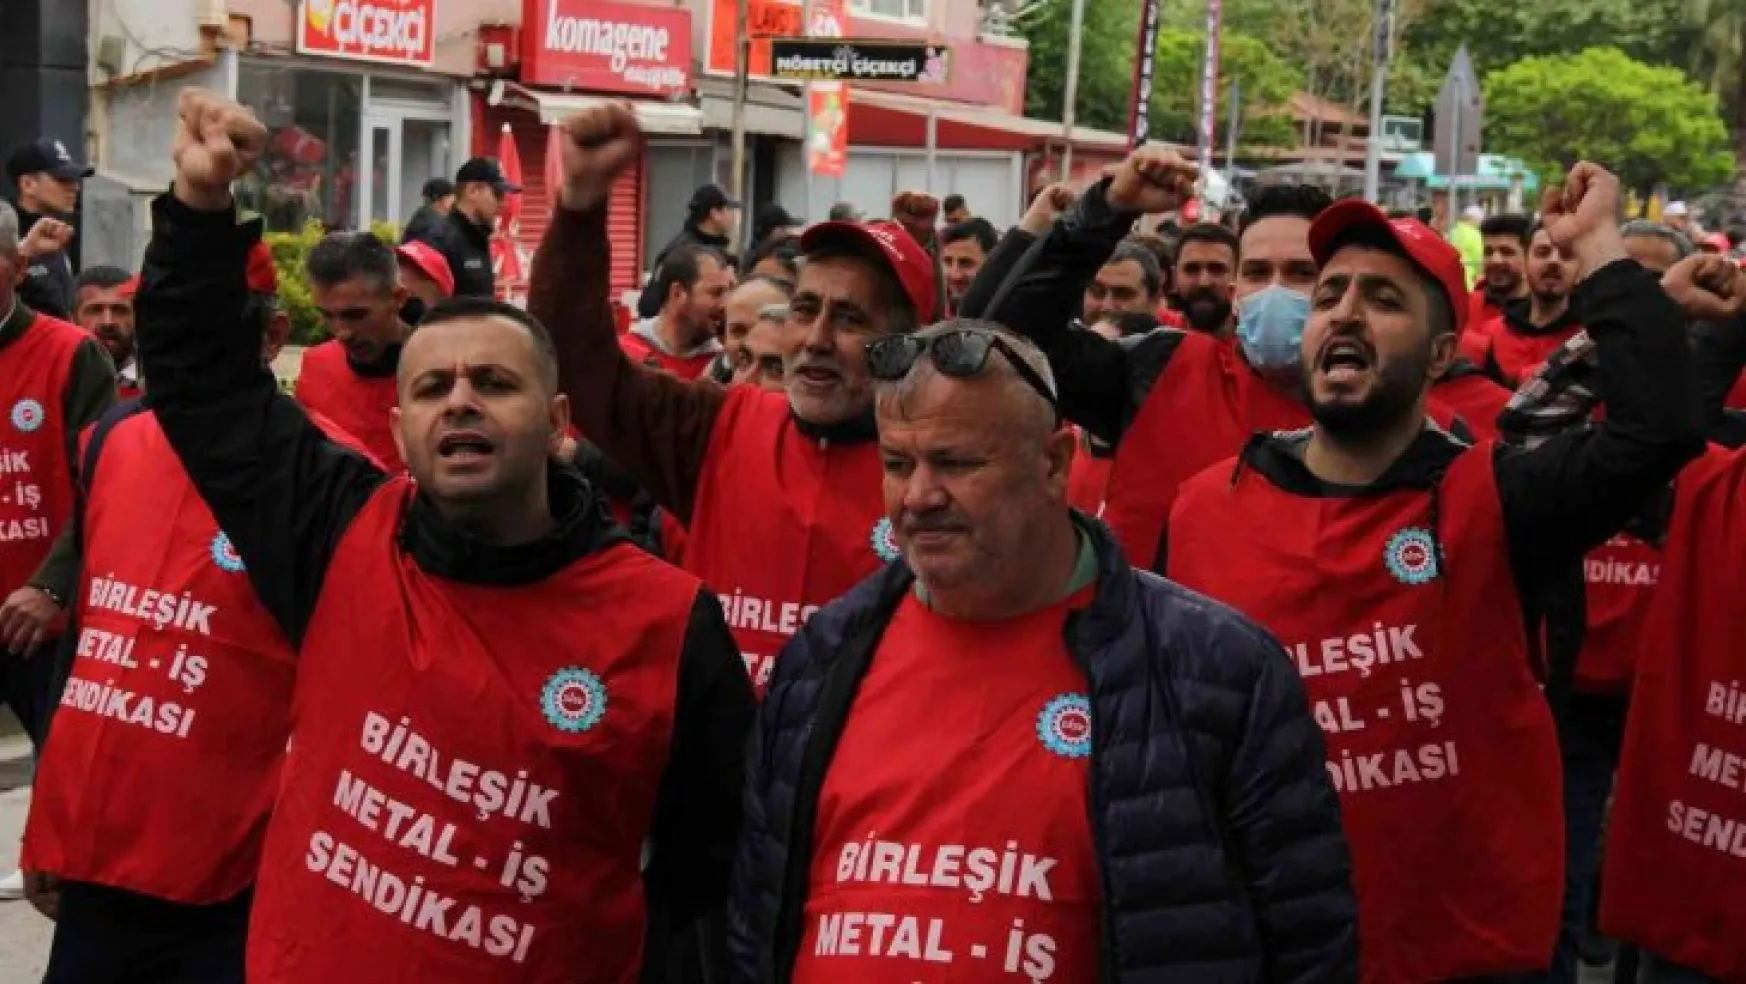 İşçi kenti Kocaeli'de binlerce işçi 1 Mayıs'ta buluştu